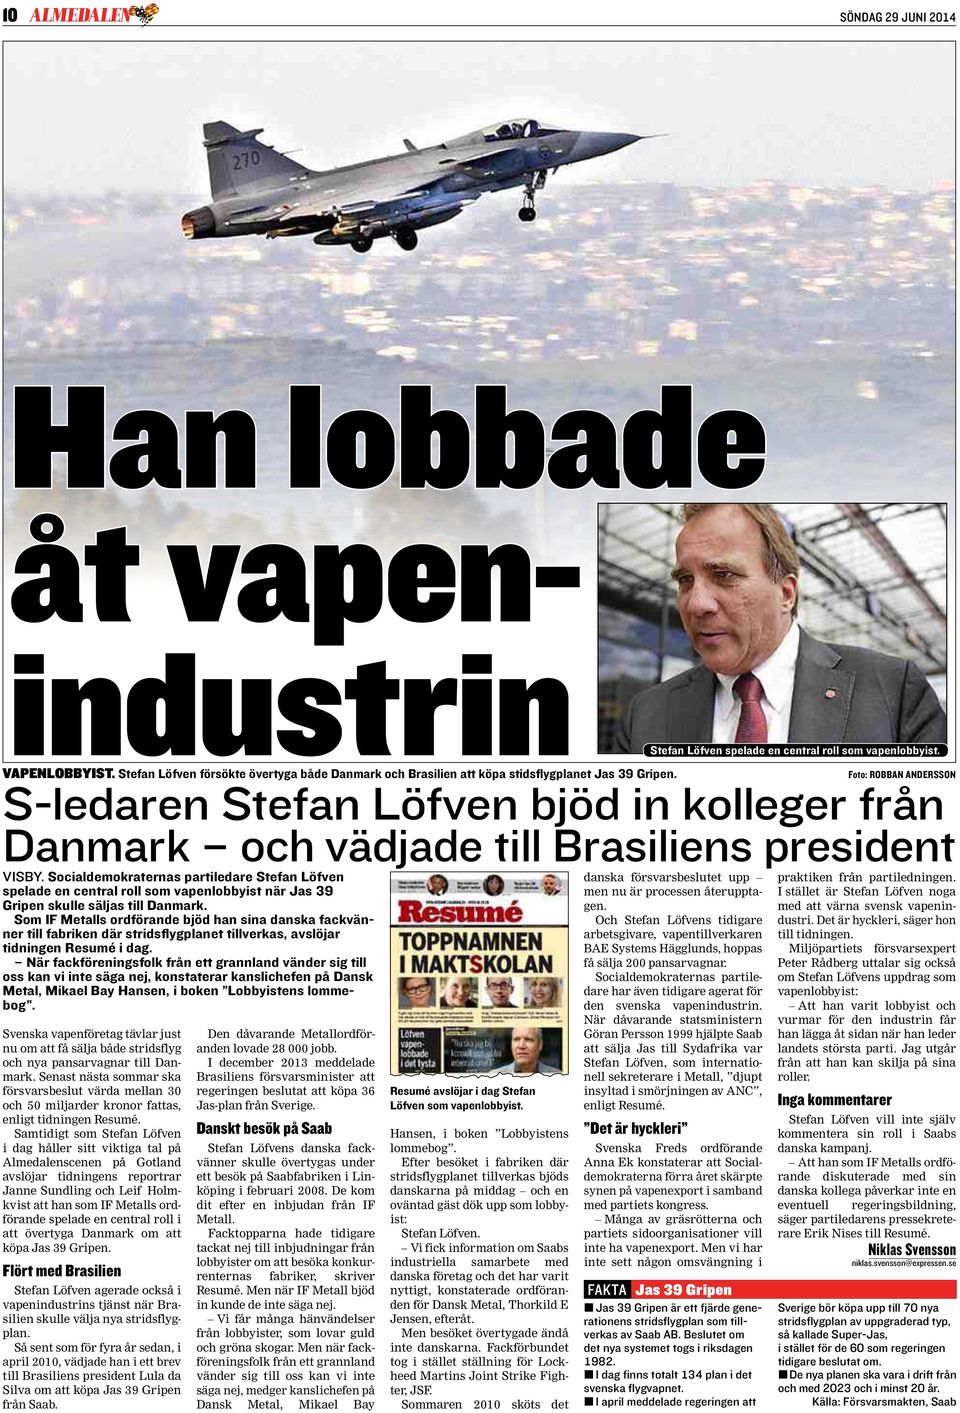 Socialdeokraternas partiledare Stefan Löfven spelade en central roll so vapenlobbyist när Jas 39 Gripen skulle säljas till Danark.